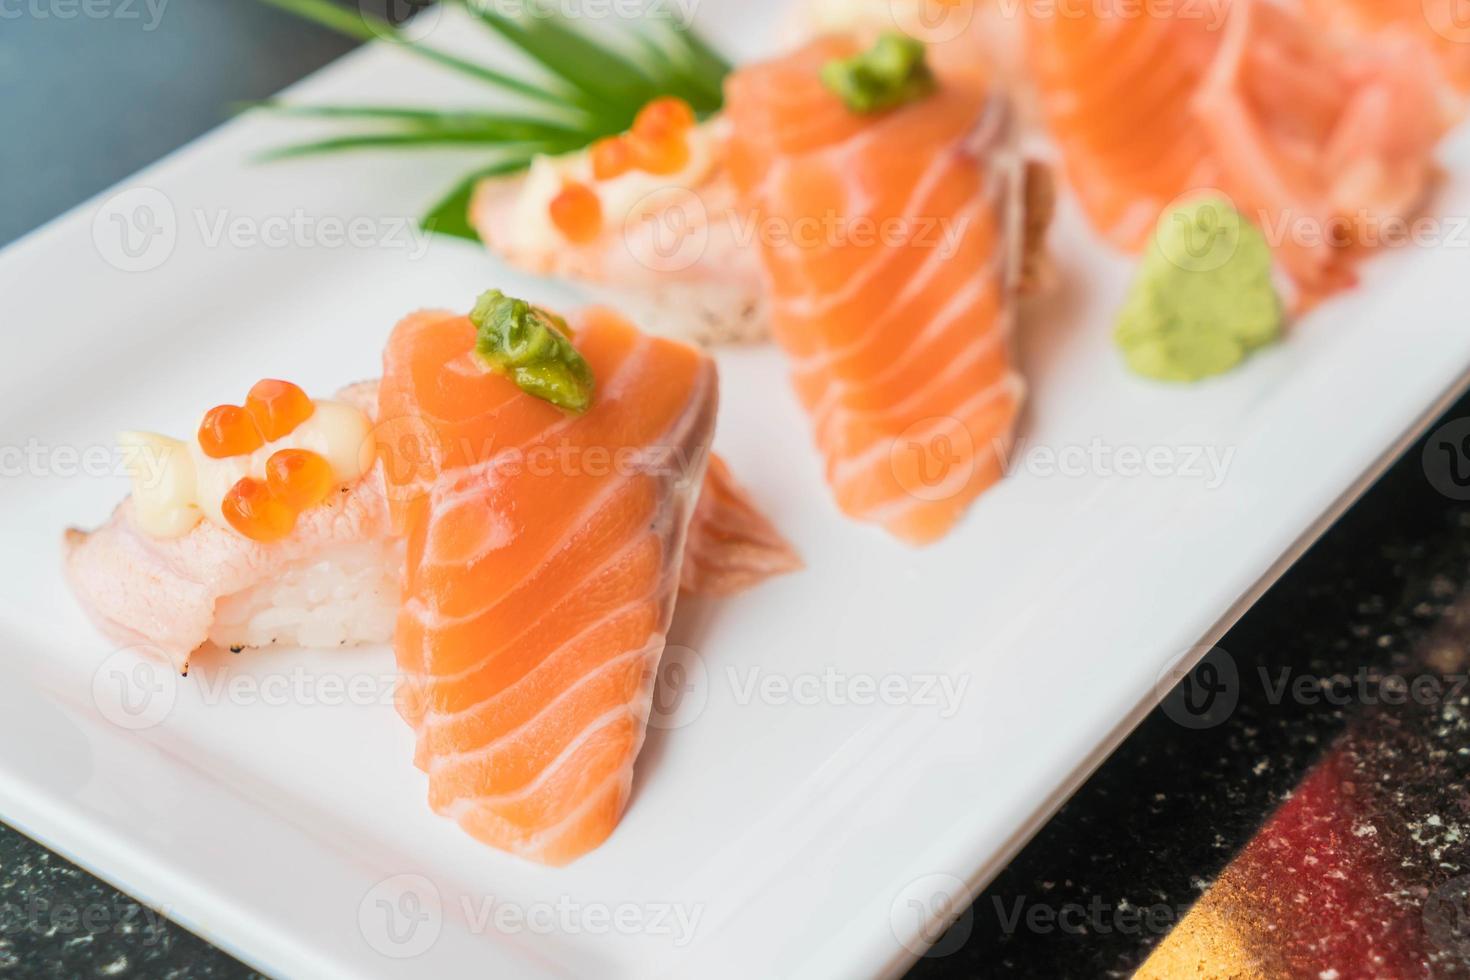 Lachs-Sushi-Rollen - japanisches Essen foto